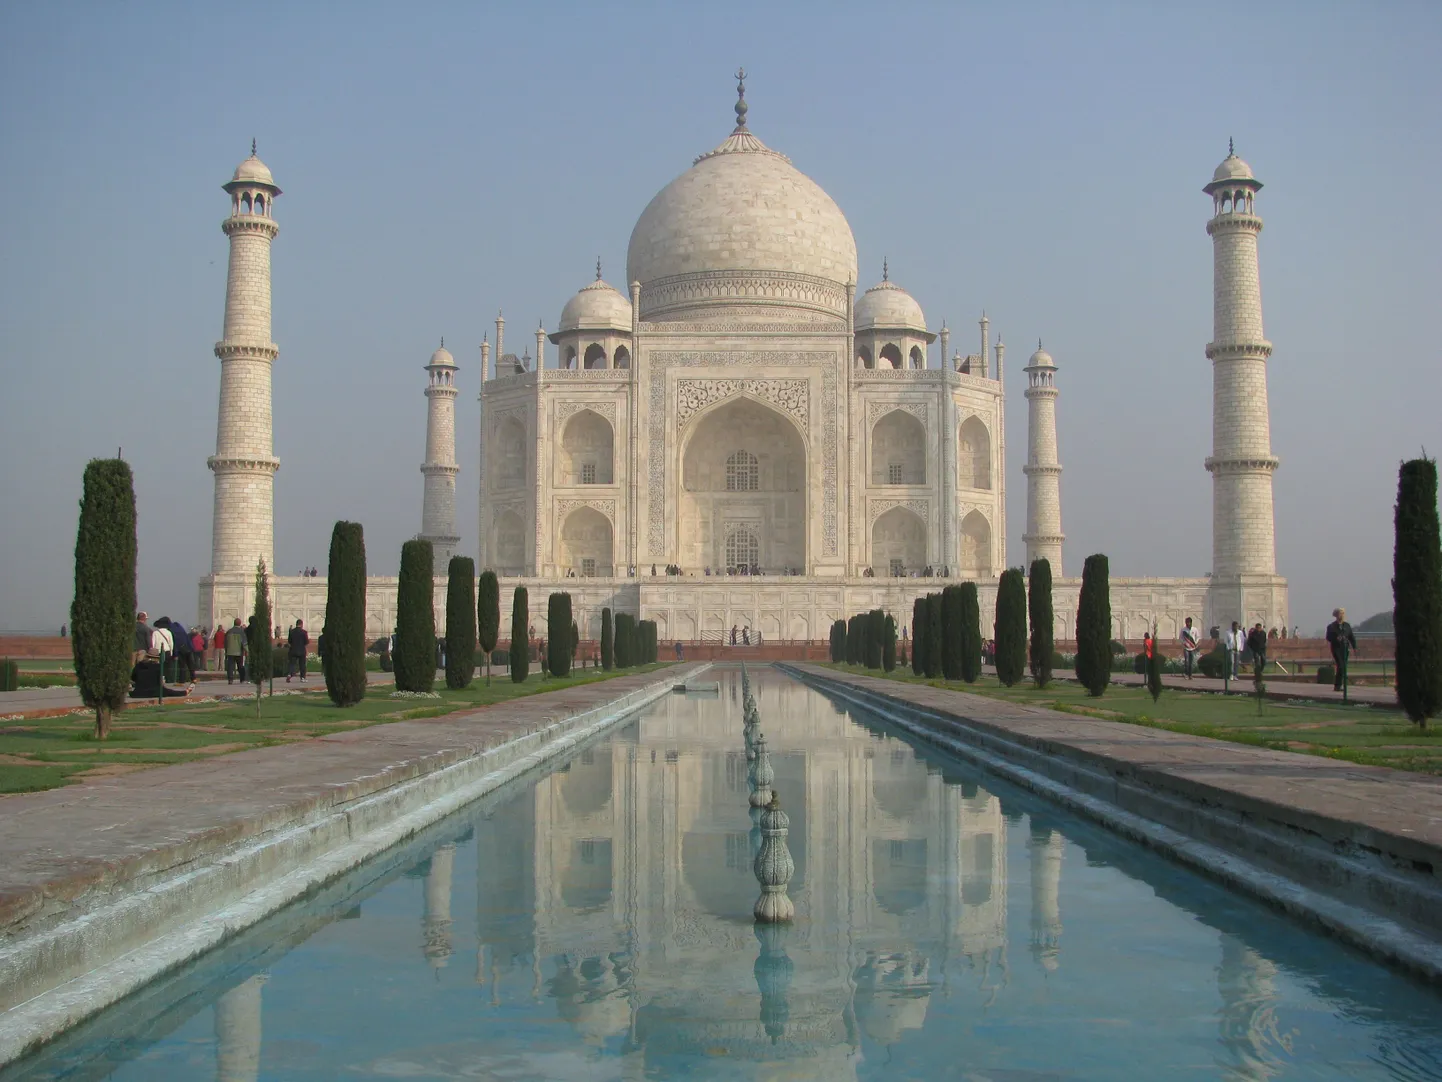 India ühe sümboli Taj Mahali lasi moslemist valitseja ehitada oma naise auks, kes oli talle hulga lapsi sünnitanud.